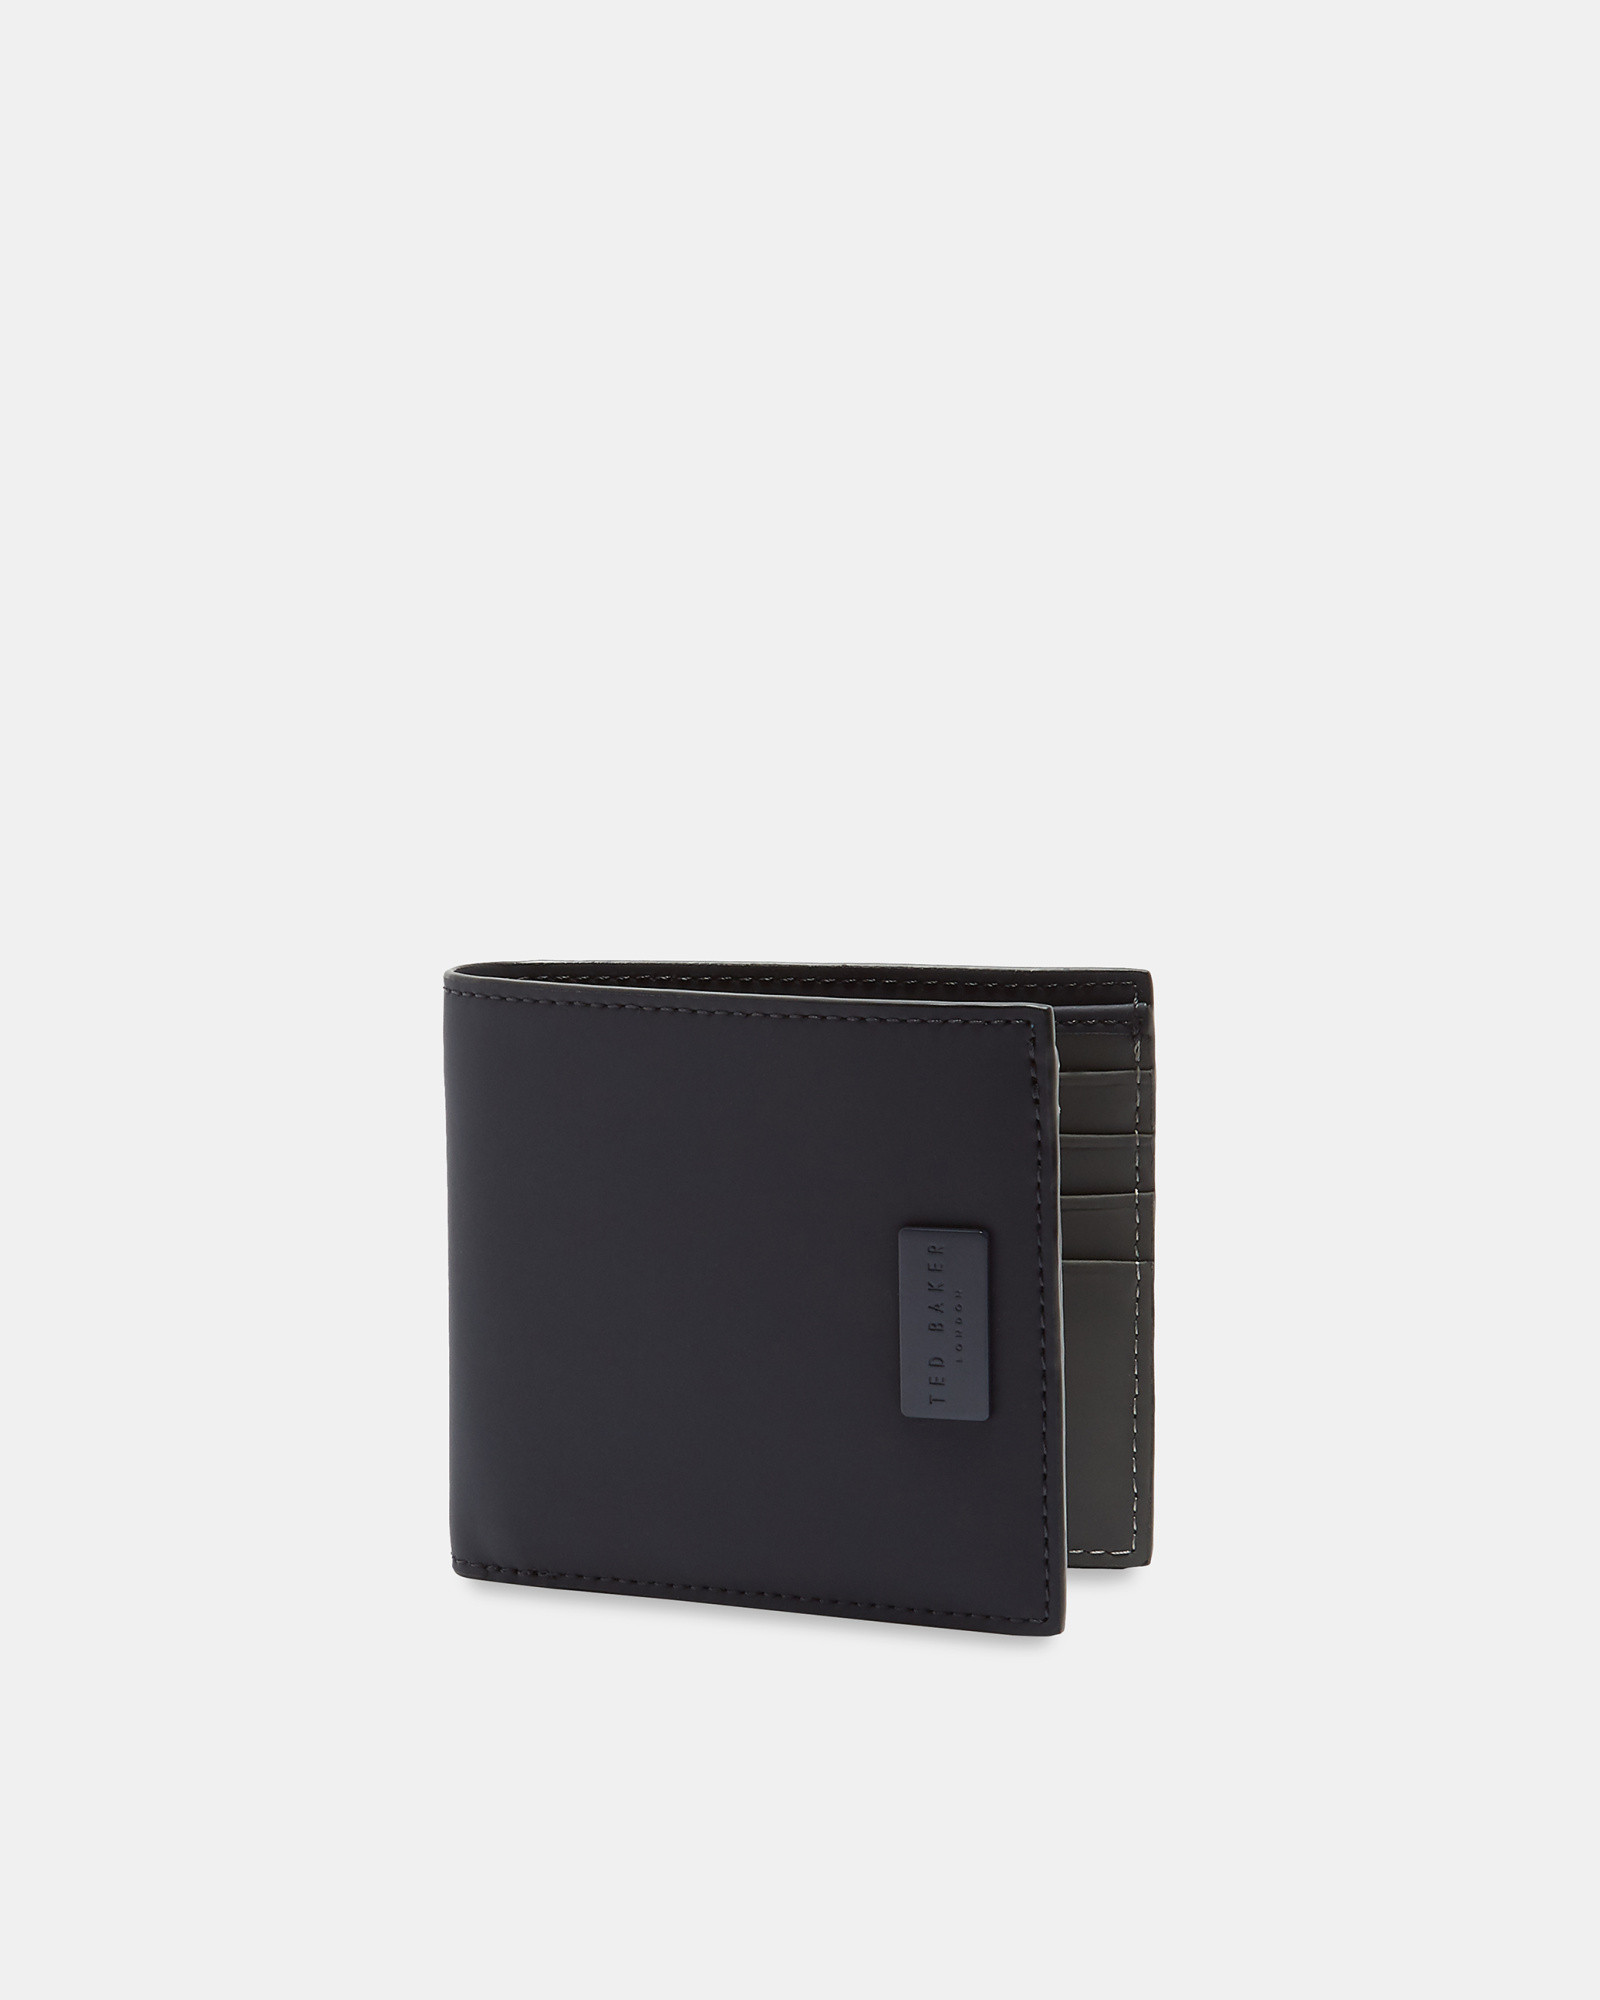 BOUNCE Bi-fold leather wallet